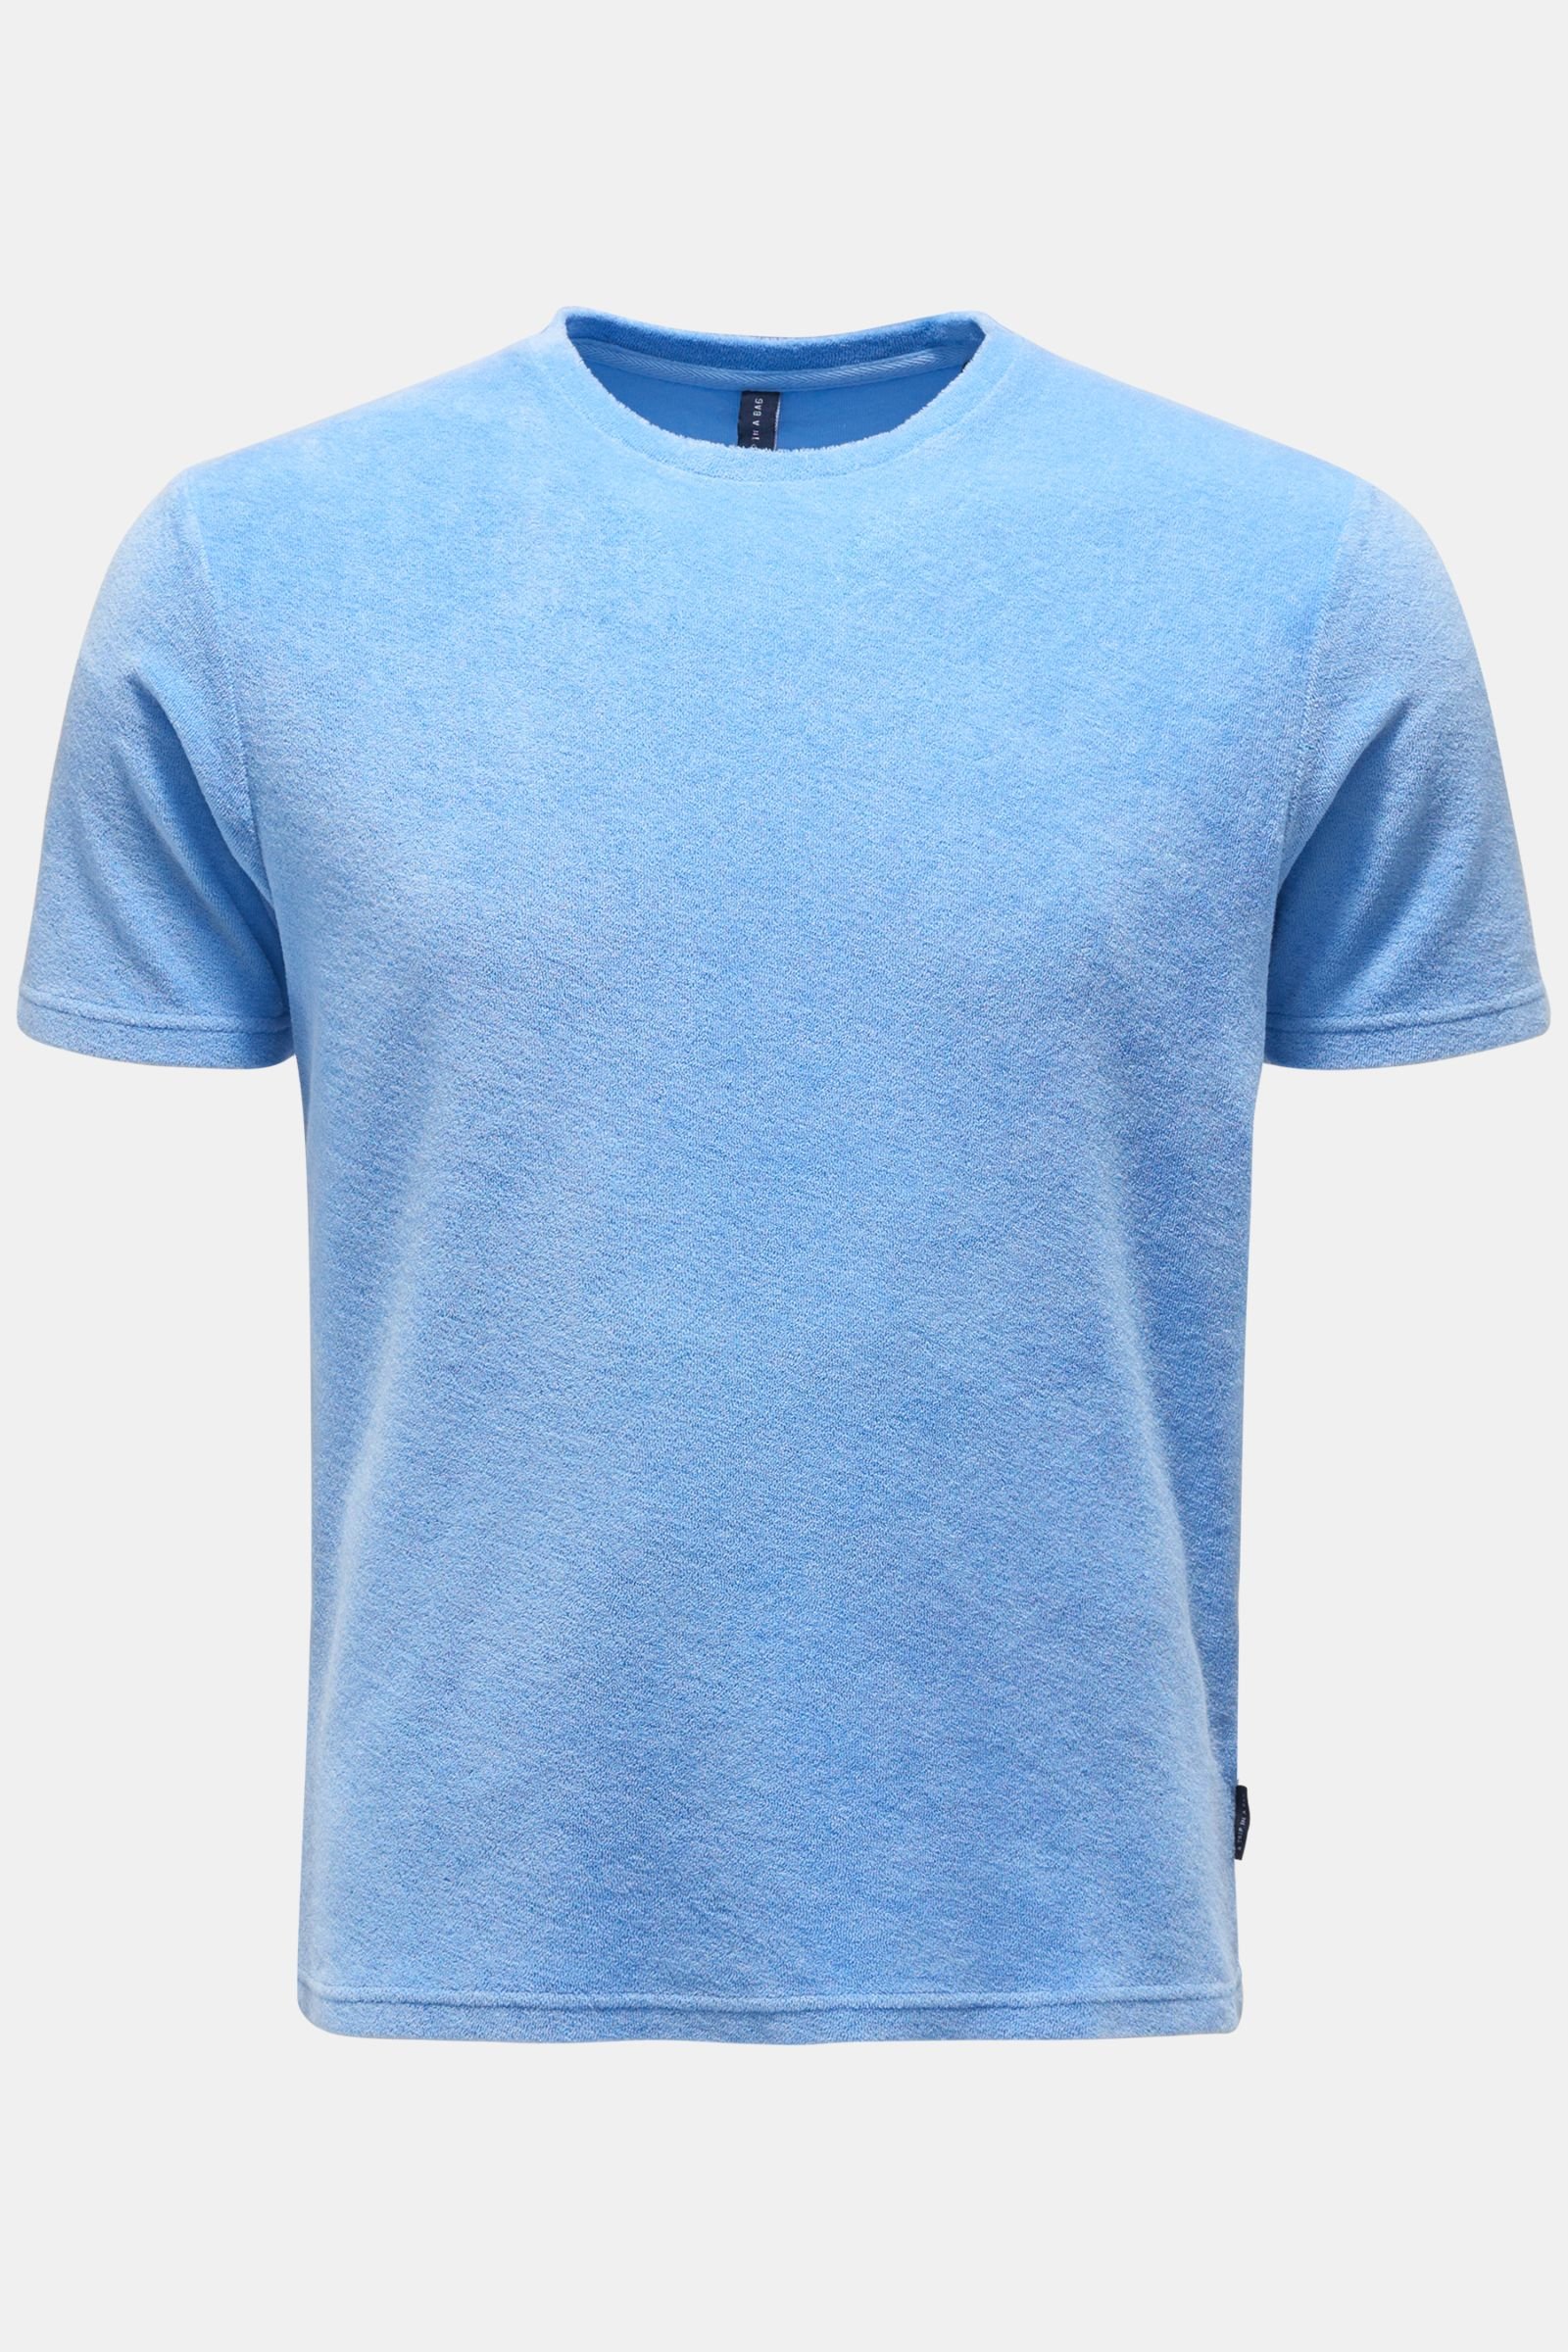 Terry crew neck T-shirt 'Terry Tee' light blue